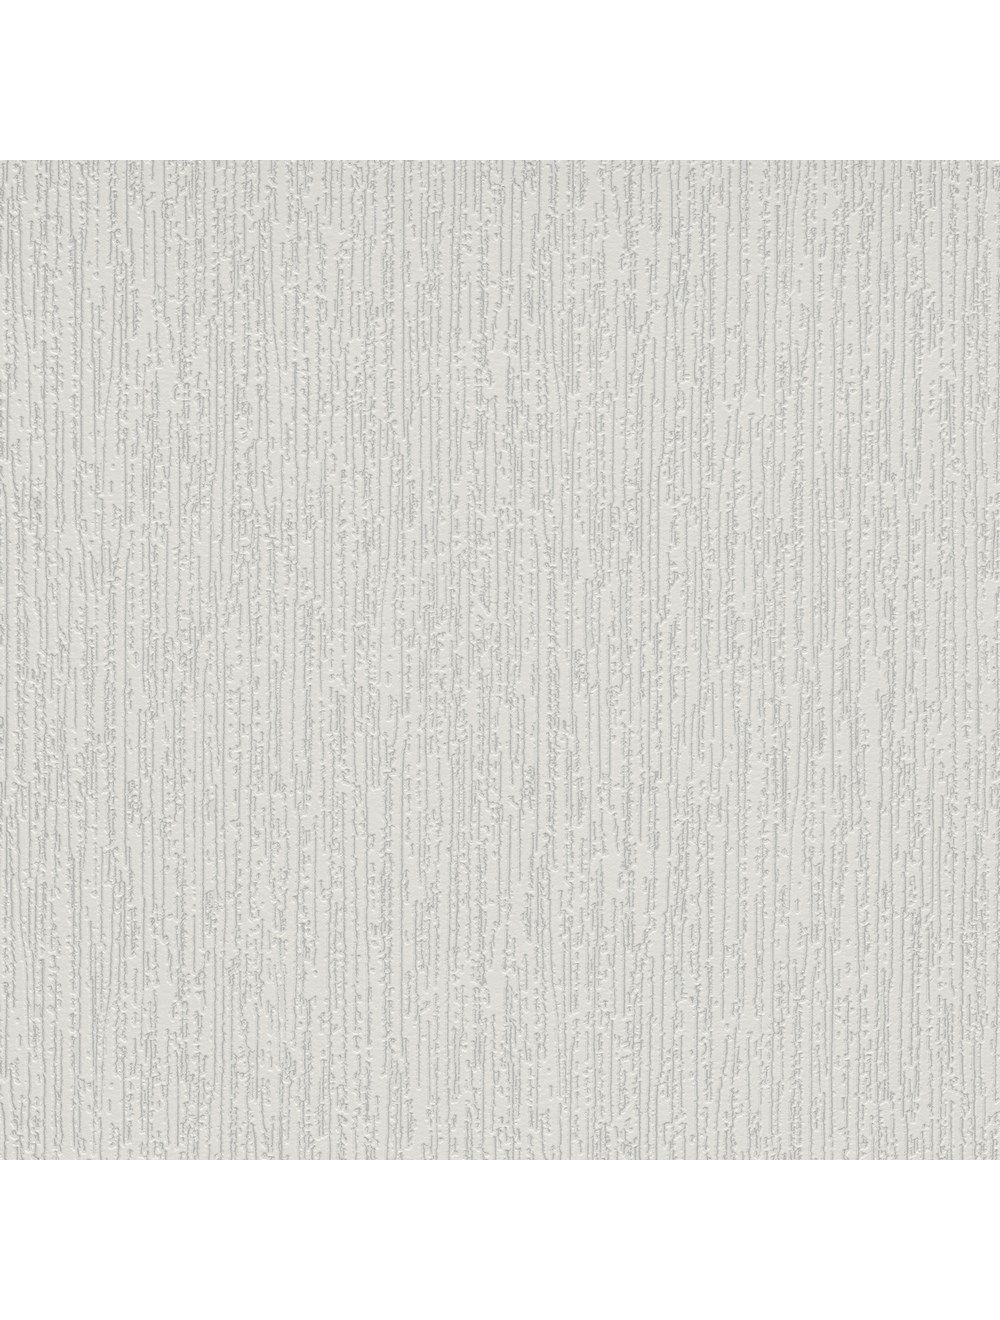 Erismann Fleur Texture Wallpaper 9731-01 - DecorSave Wallpapers